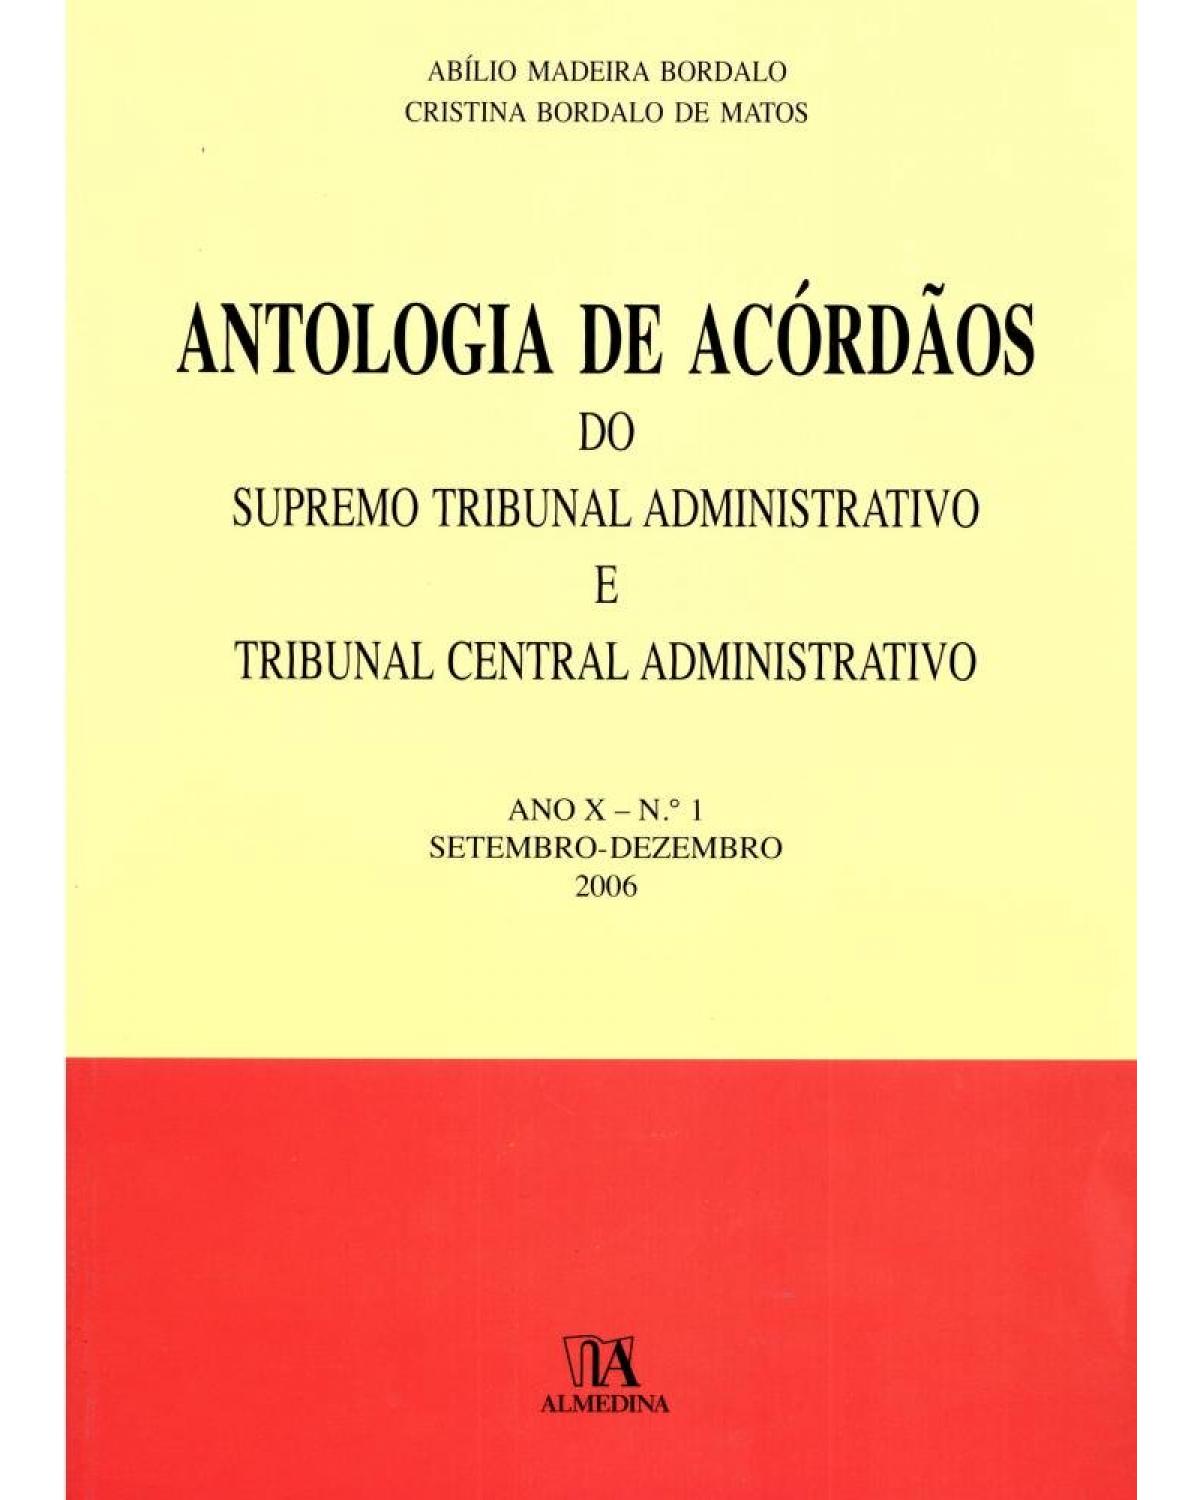 Antologia de acórdãos do supremo tribunal administrativo e tribunal central administrativo - ano X: Setembro-dezembro 2006 - 1ª Edição | 2007